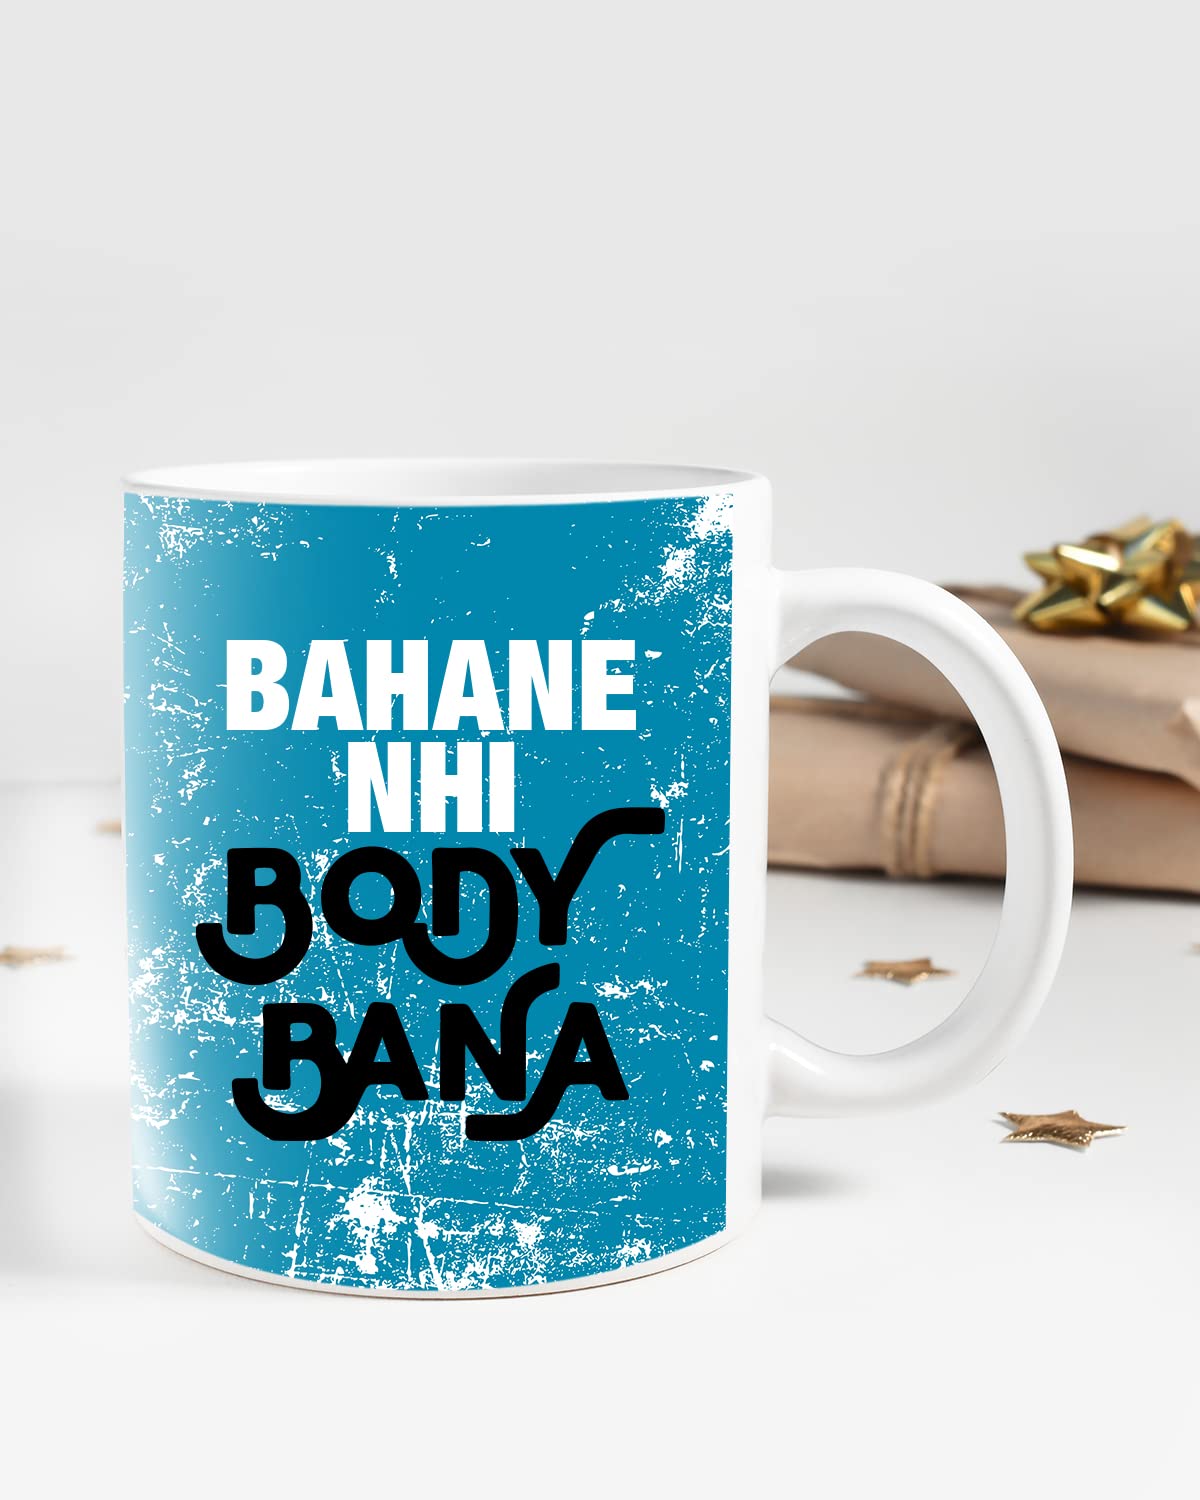 BAHANE NHI Body BANA Coffee Mug - Gift for Friend, Birthday Gift, Birthday Mug, Sarcasm Quotes Mug, Mugs with Funny & Funky Dialogues, Bollywood Mugs, Funny Mugs for Him & Her